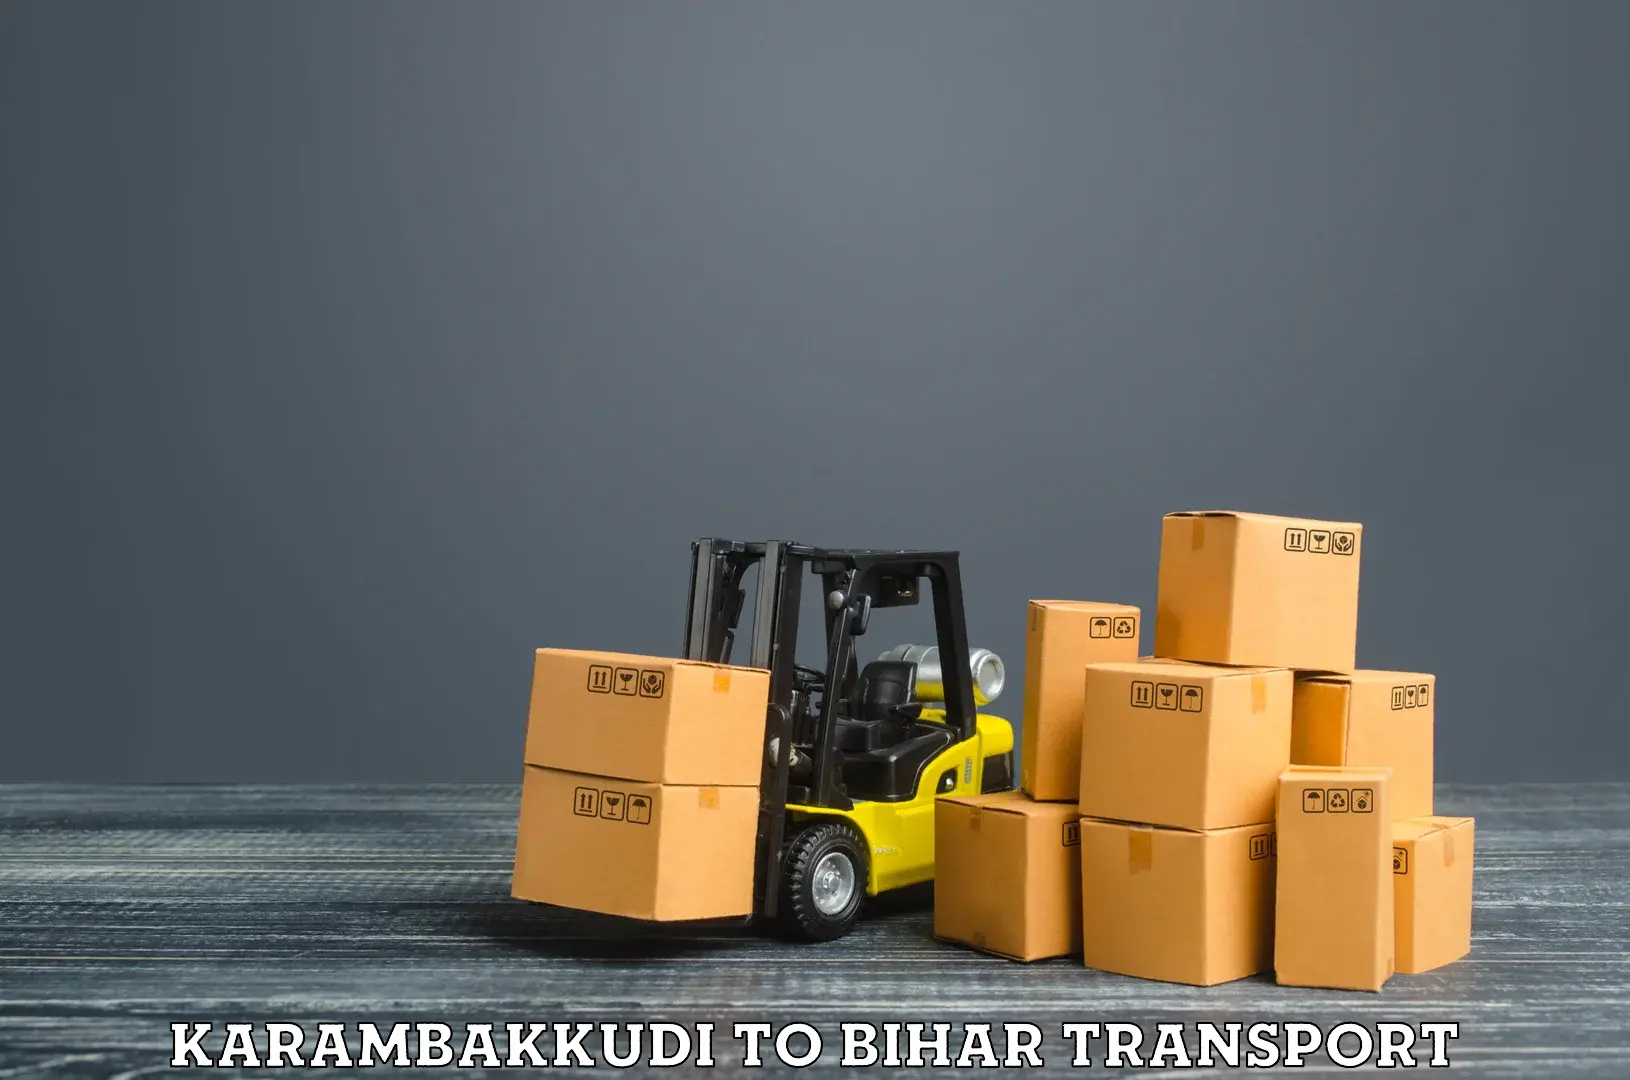 Pick up transport service Karambakkudi to Arwal